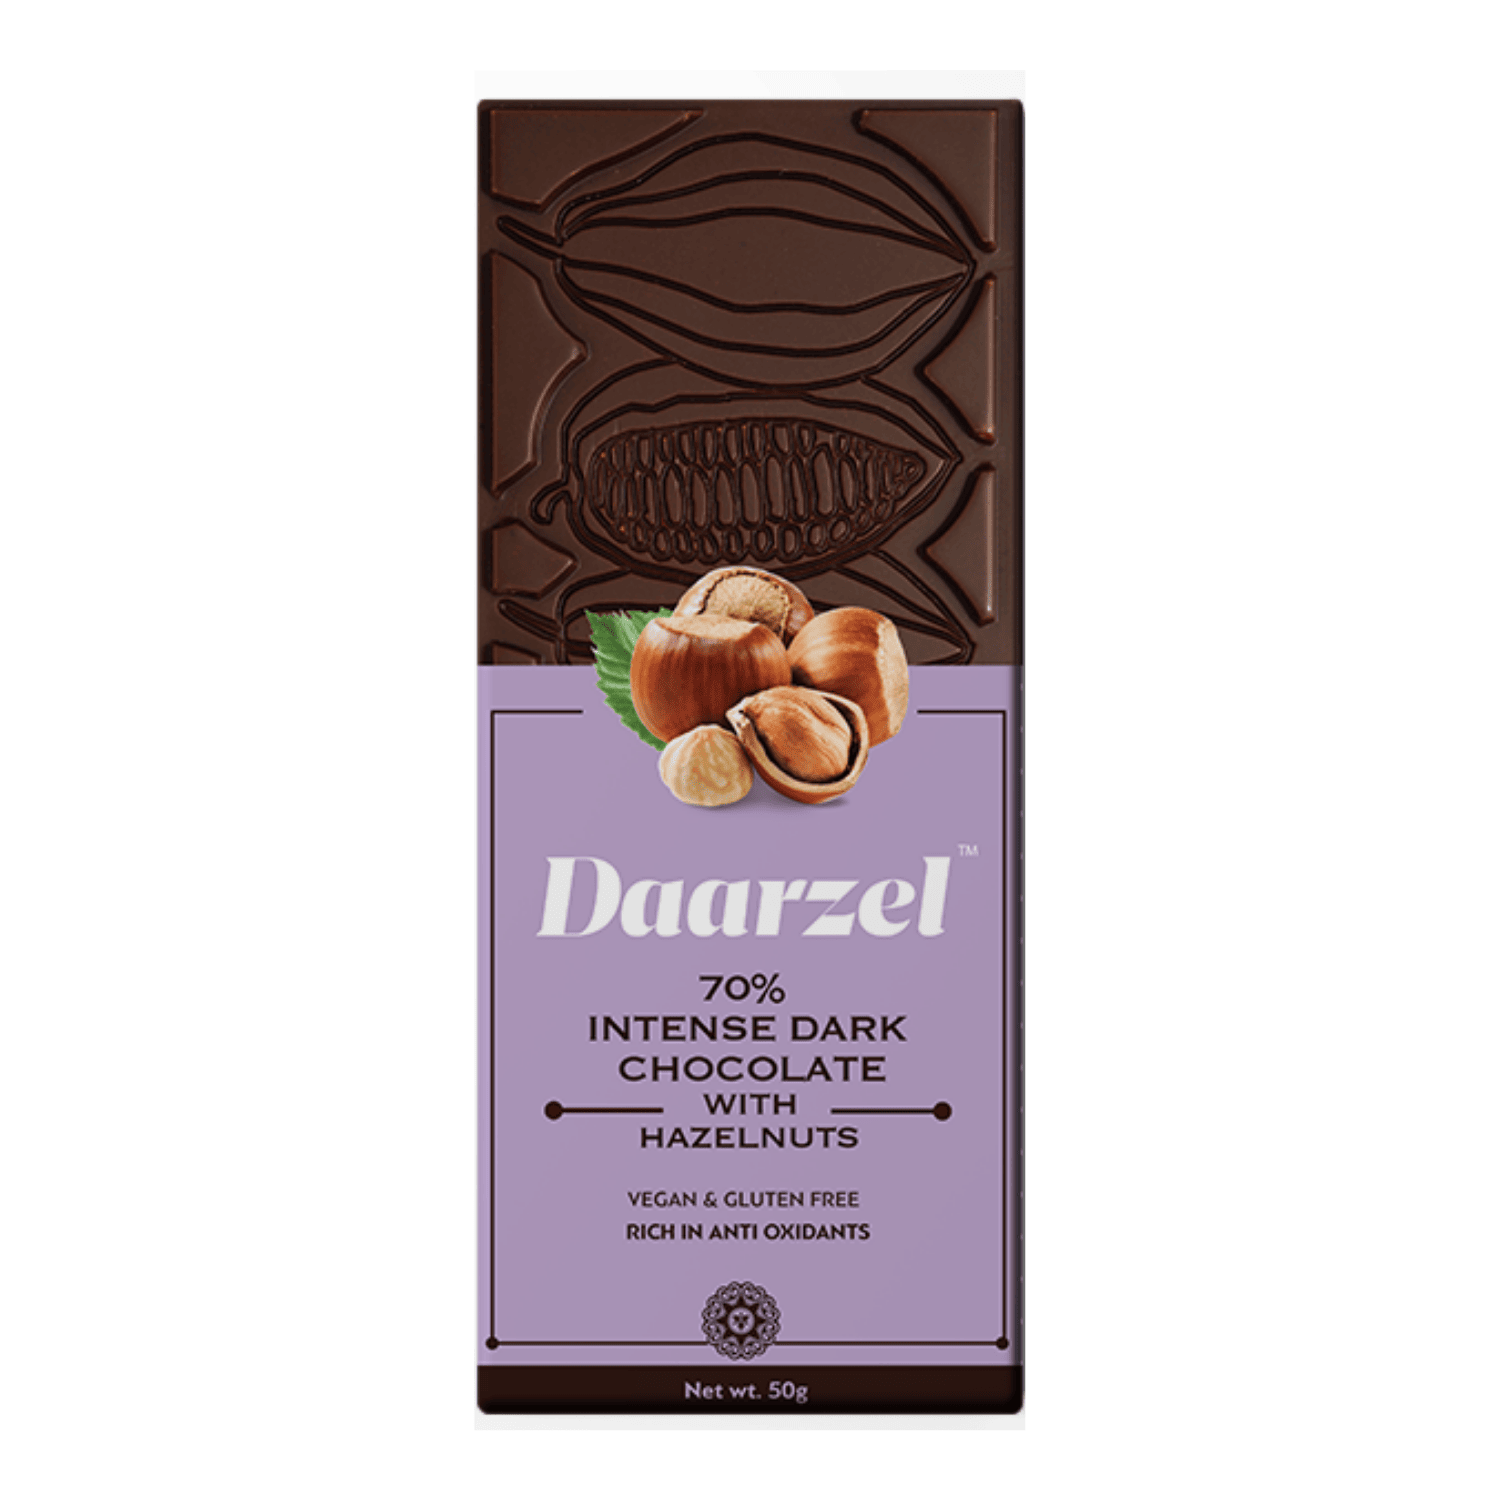 Daarzel  70 Intense Dark Chocolate with Hazelnuts  Vegan & Gluten Free  50 g